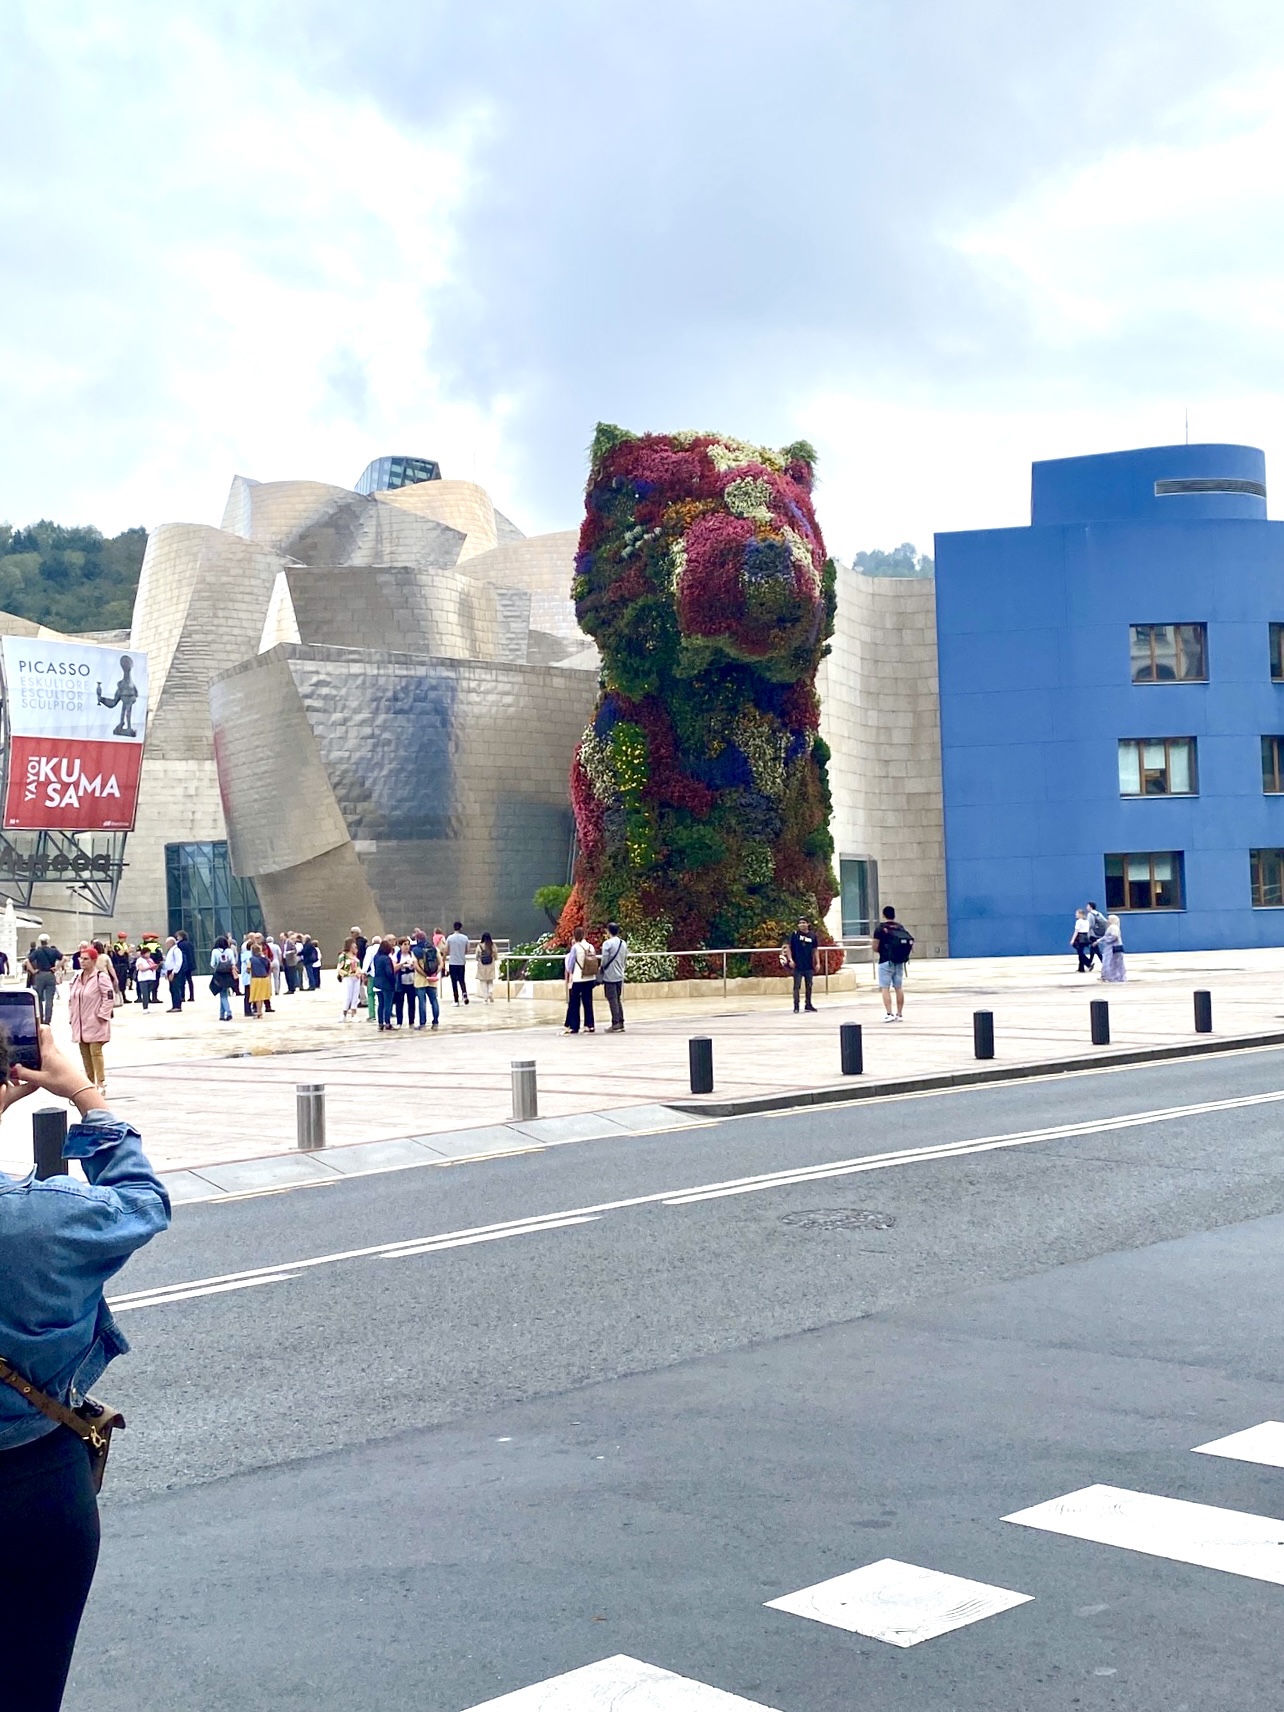 03.10 – Guggenheim Bilbao Museum